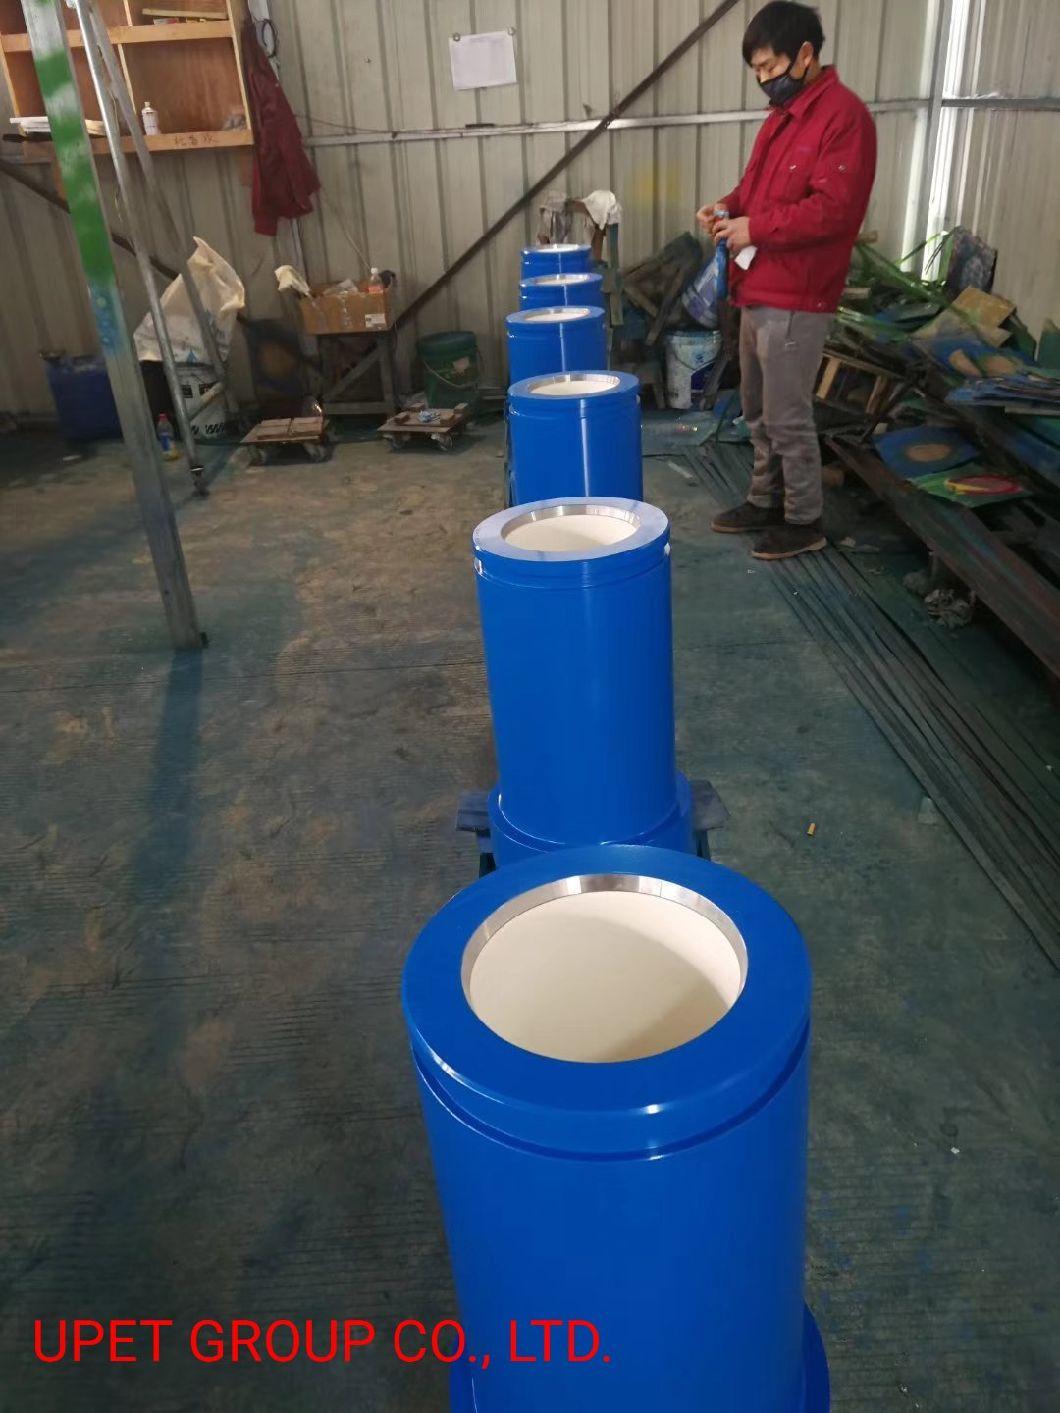 Drilling Pump Ceramic Liner F-1000, F-1600, 14p-220, 12p-160, T-1300, Pz-8, Pz-9, Pz-